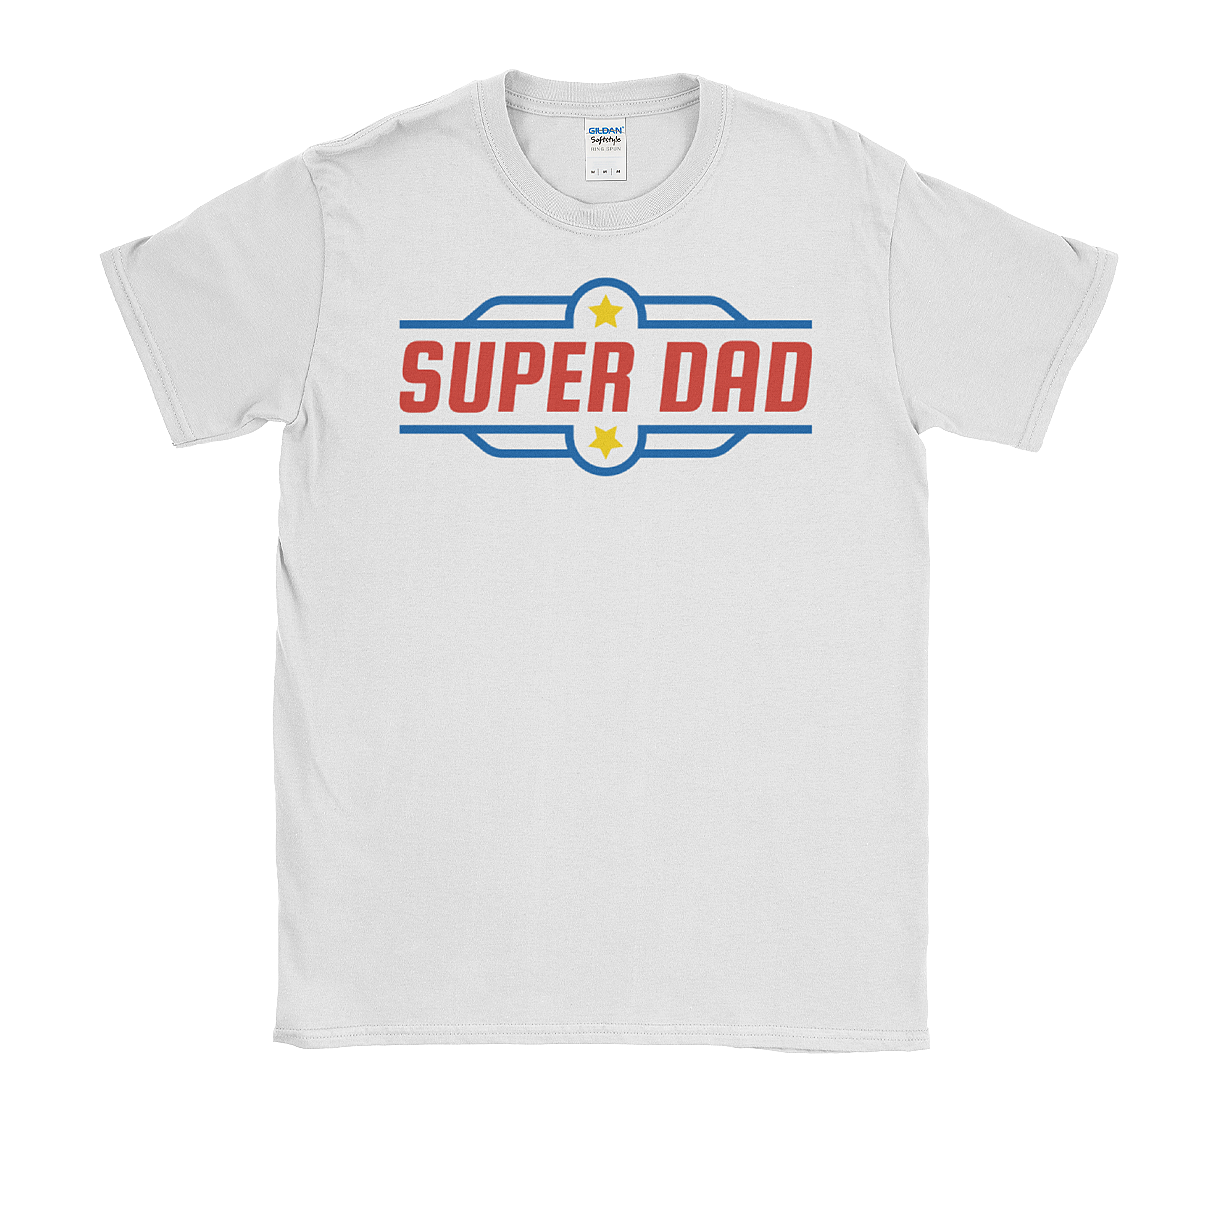 Super Dad Tee